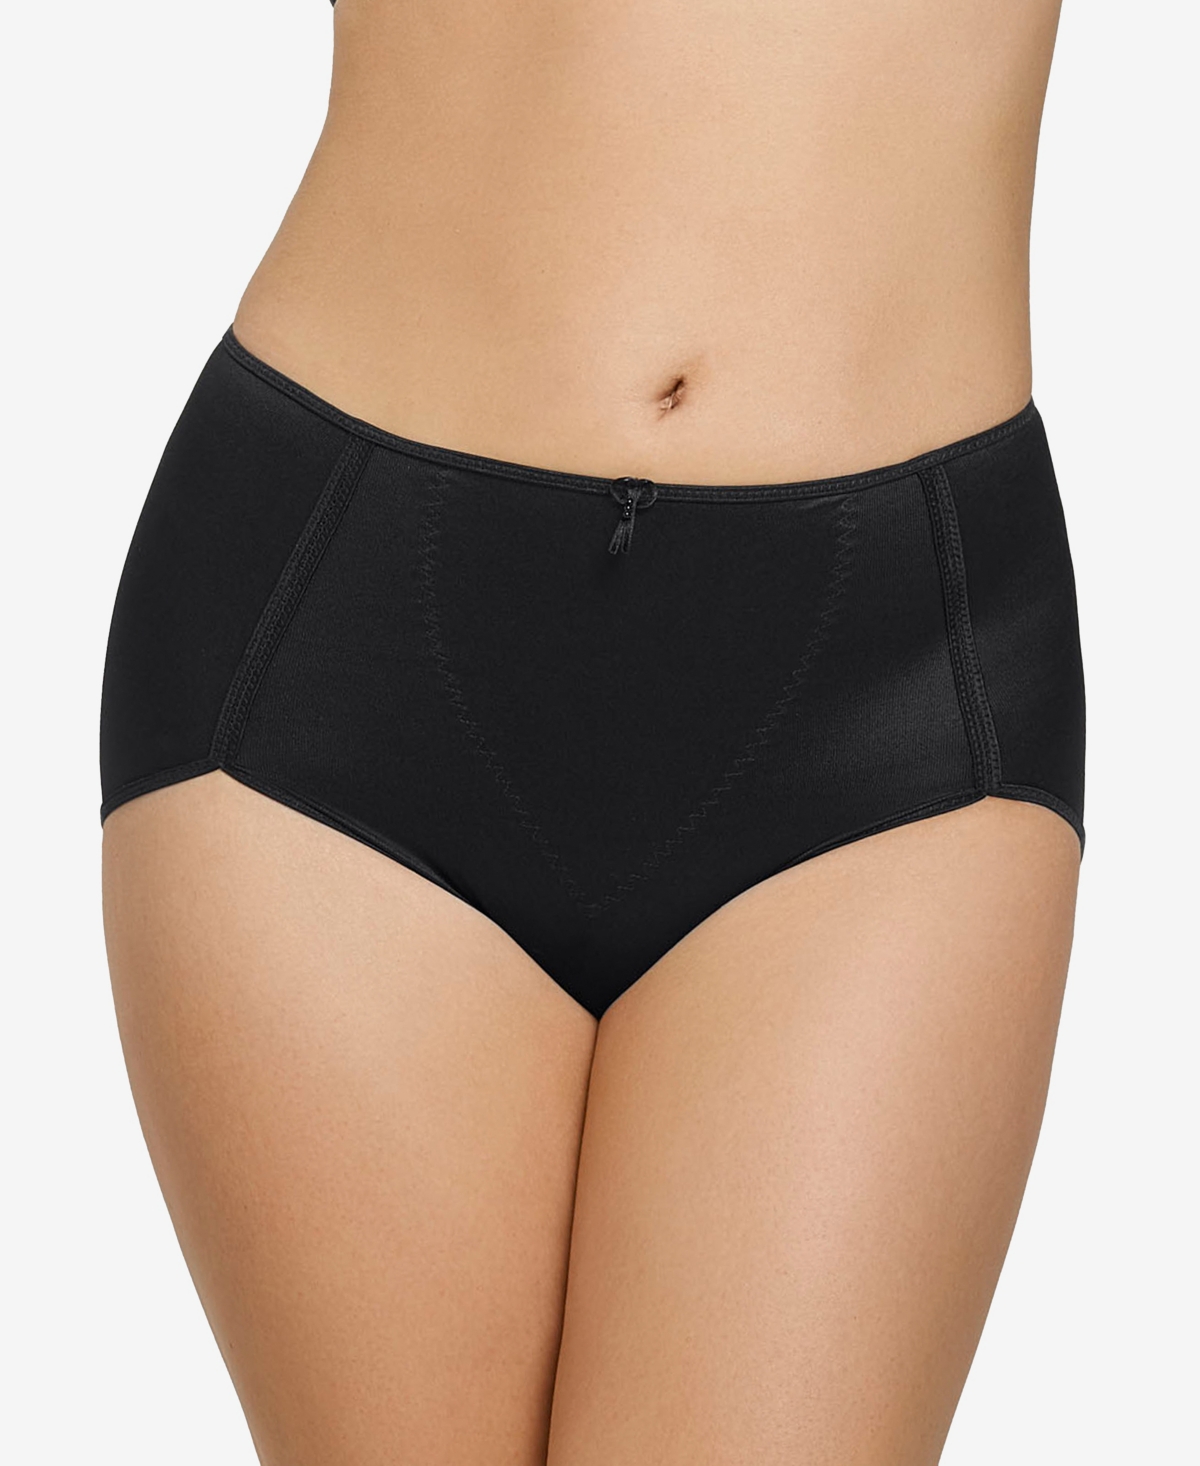 Women's Firm Tummy-Control High-Waist Panty 0243 - Light Beige